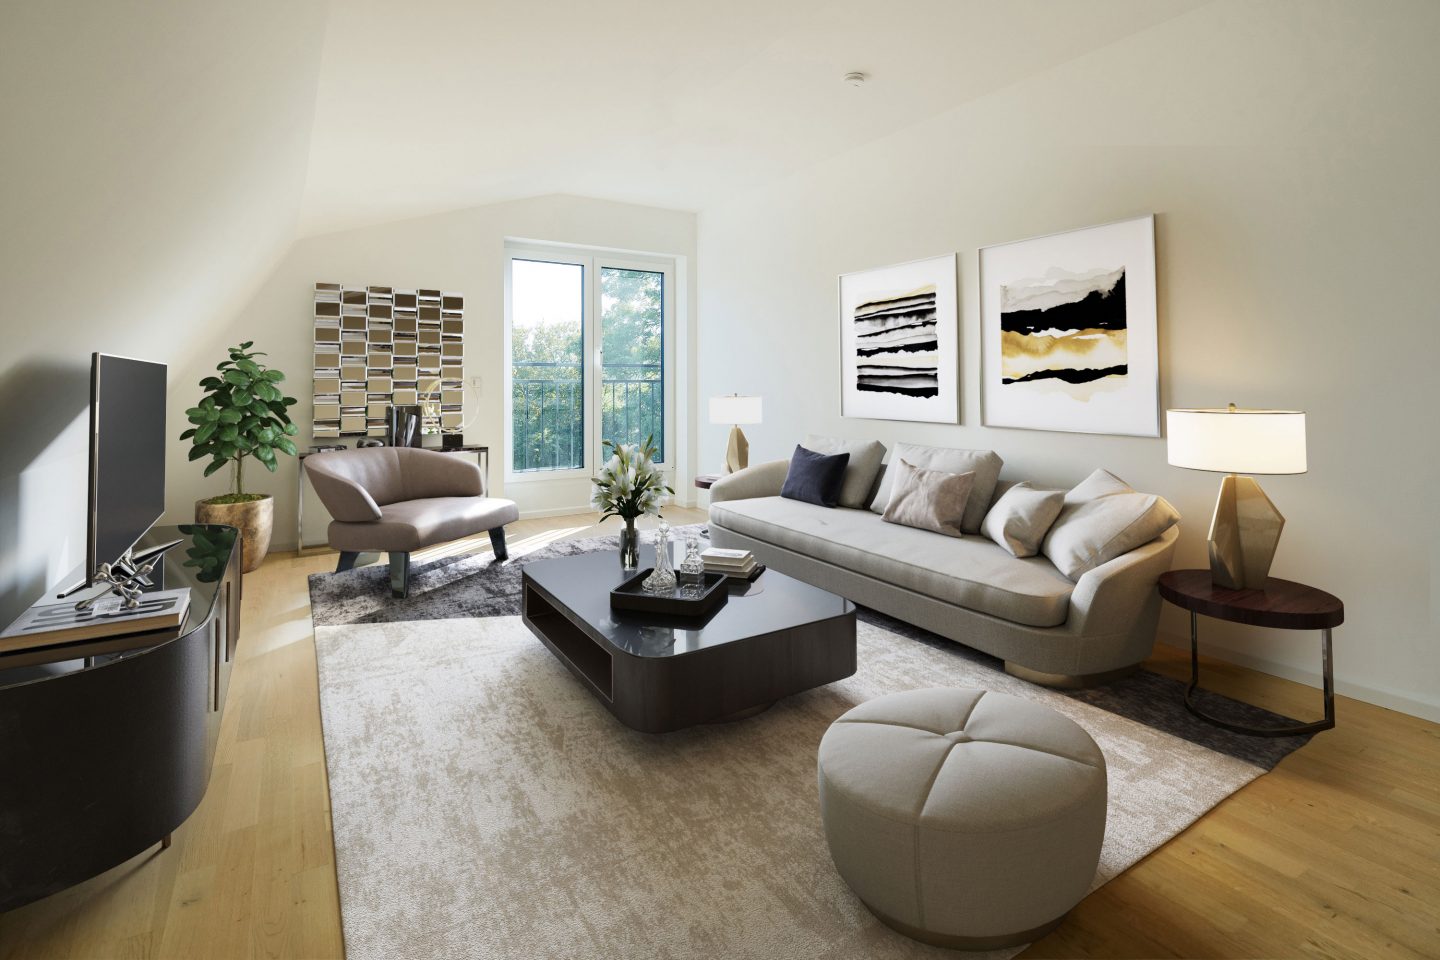 Digitales Home-Staging: Digitale Möbel in der Immobilienfotografie | Immobilienfotografie für Immobilienmakler © Offenblende